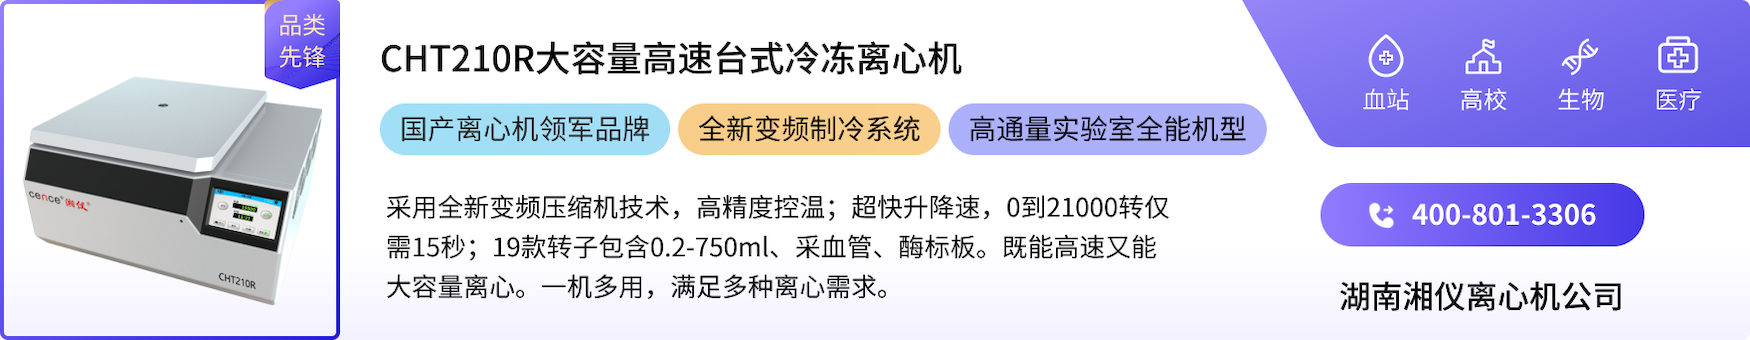 湖南湘仪实验室仪器开发有限公司